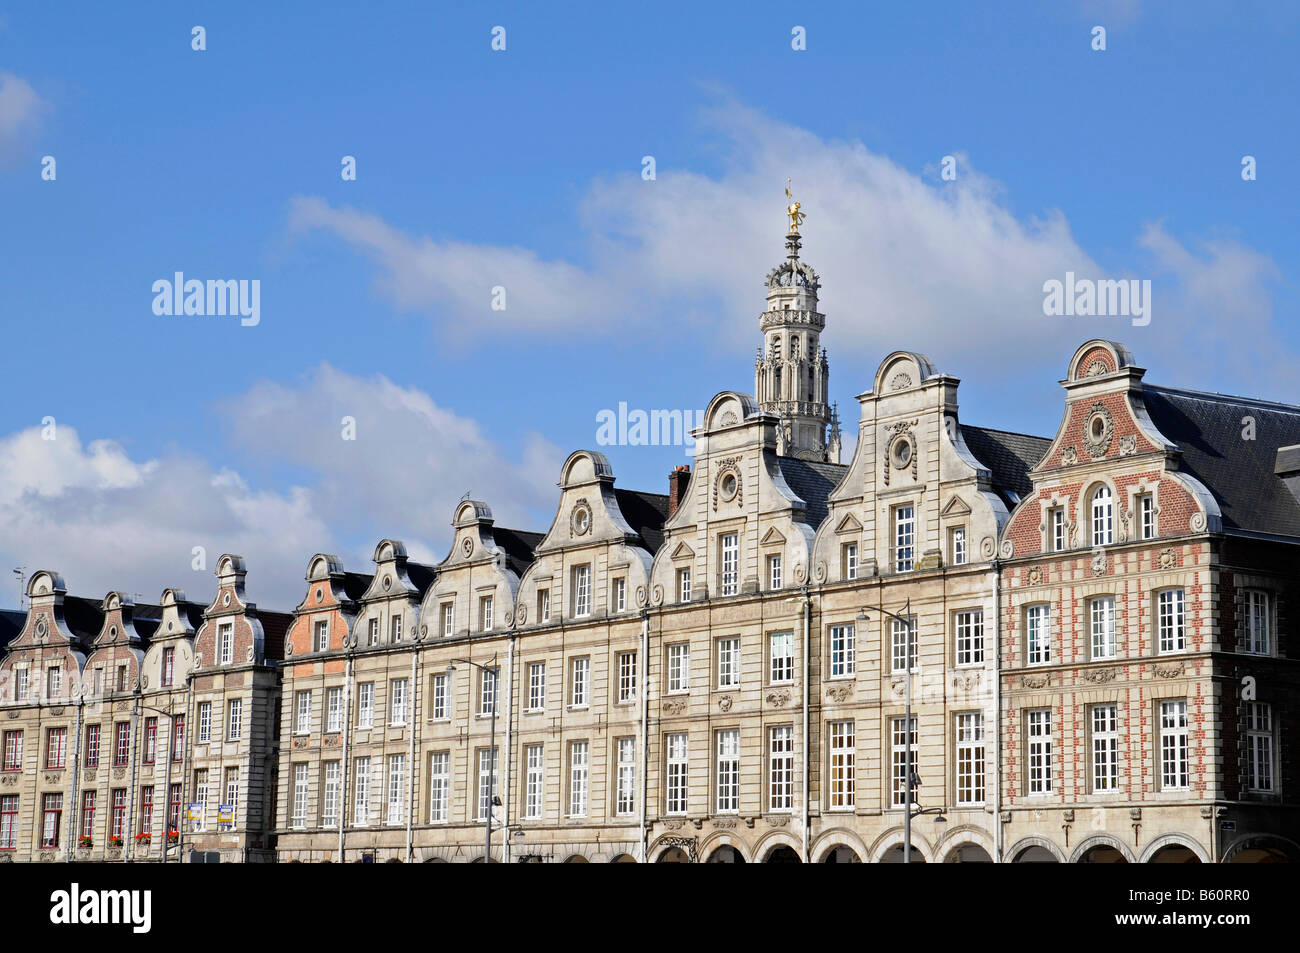 Hausfassaden, Giebel Häuser, Belfried, Wachturm, Platz, Grand Place, Arras, Nord Pas De Calais, Frankreich, Europa Stockfoto